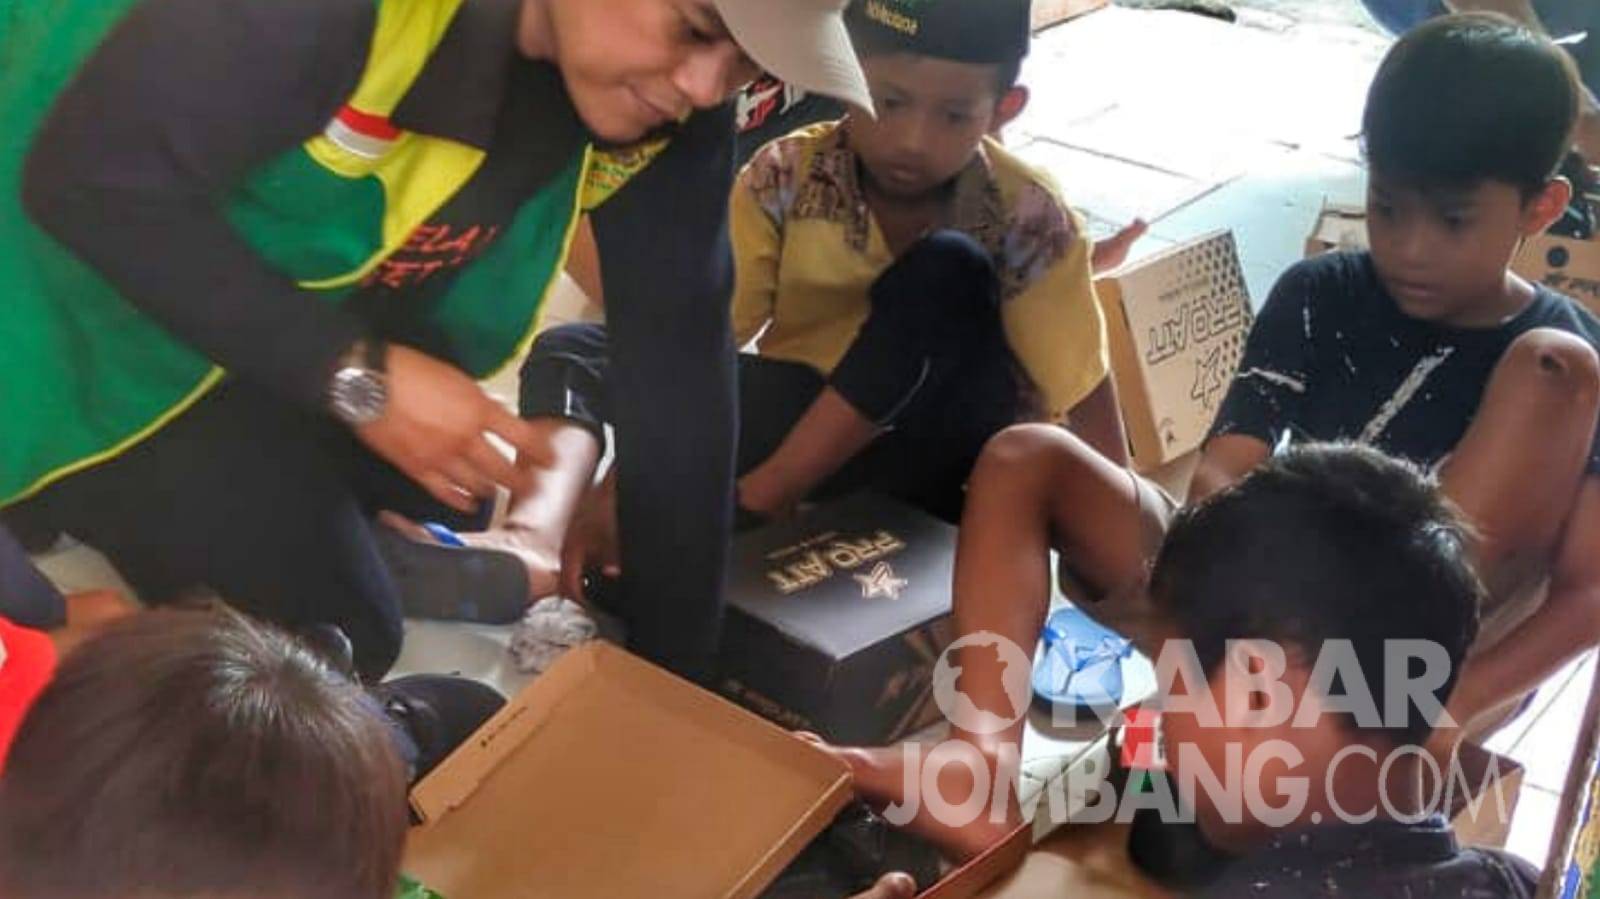 Anak-anak di desa pelosok Jombang mencoba sepatu yang diberikan Baznas, Minggu (29/5/2022). KabarJombang.com/Istimewa/